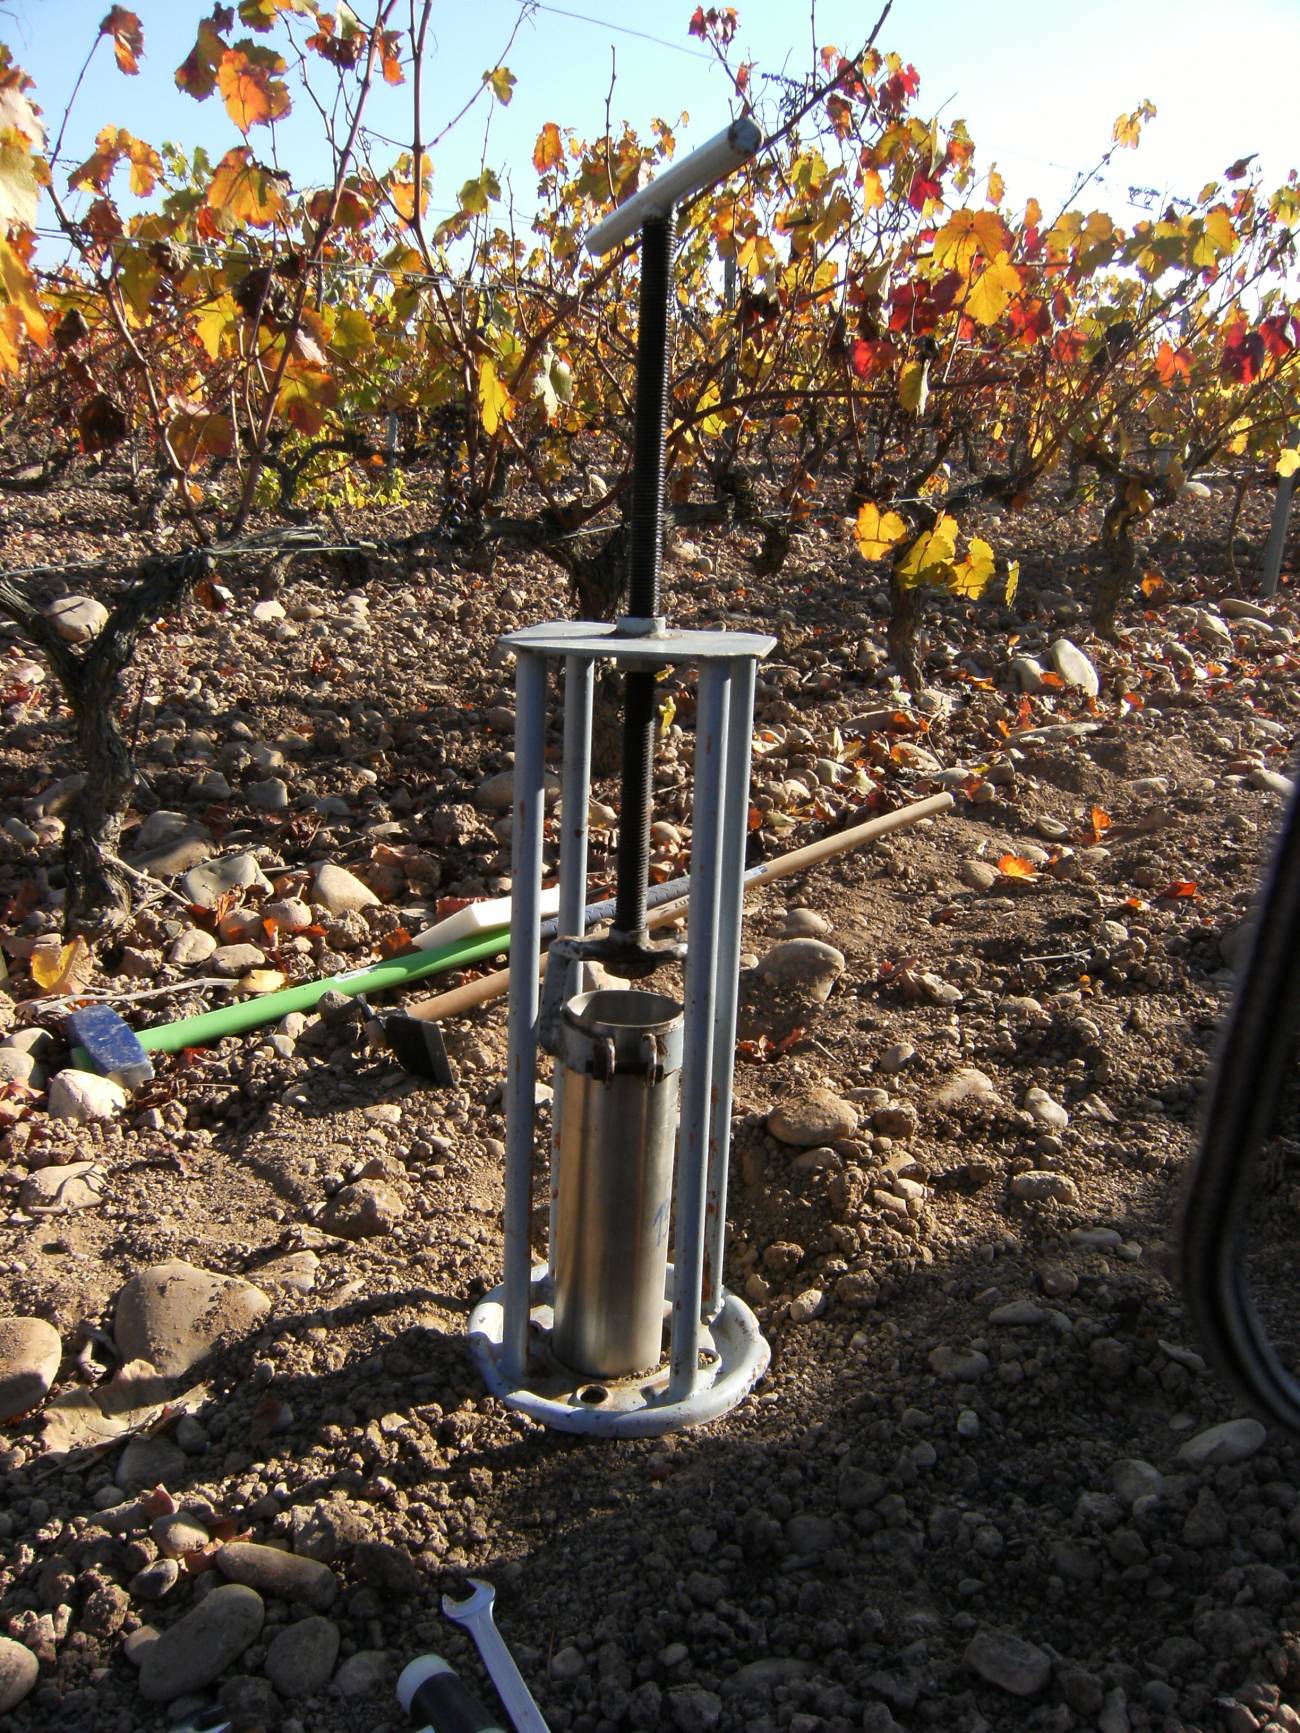 El trabajo en viñedos de La Rioja muestra que es posible predecir el comportamiento de los pesticidas cuando se añaden residuos orgánicos